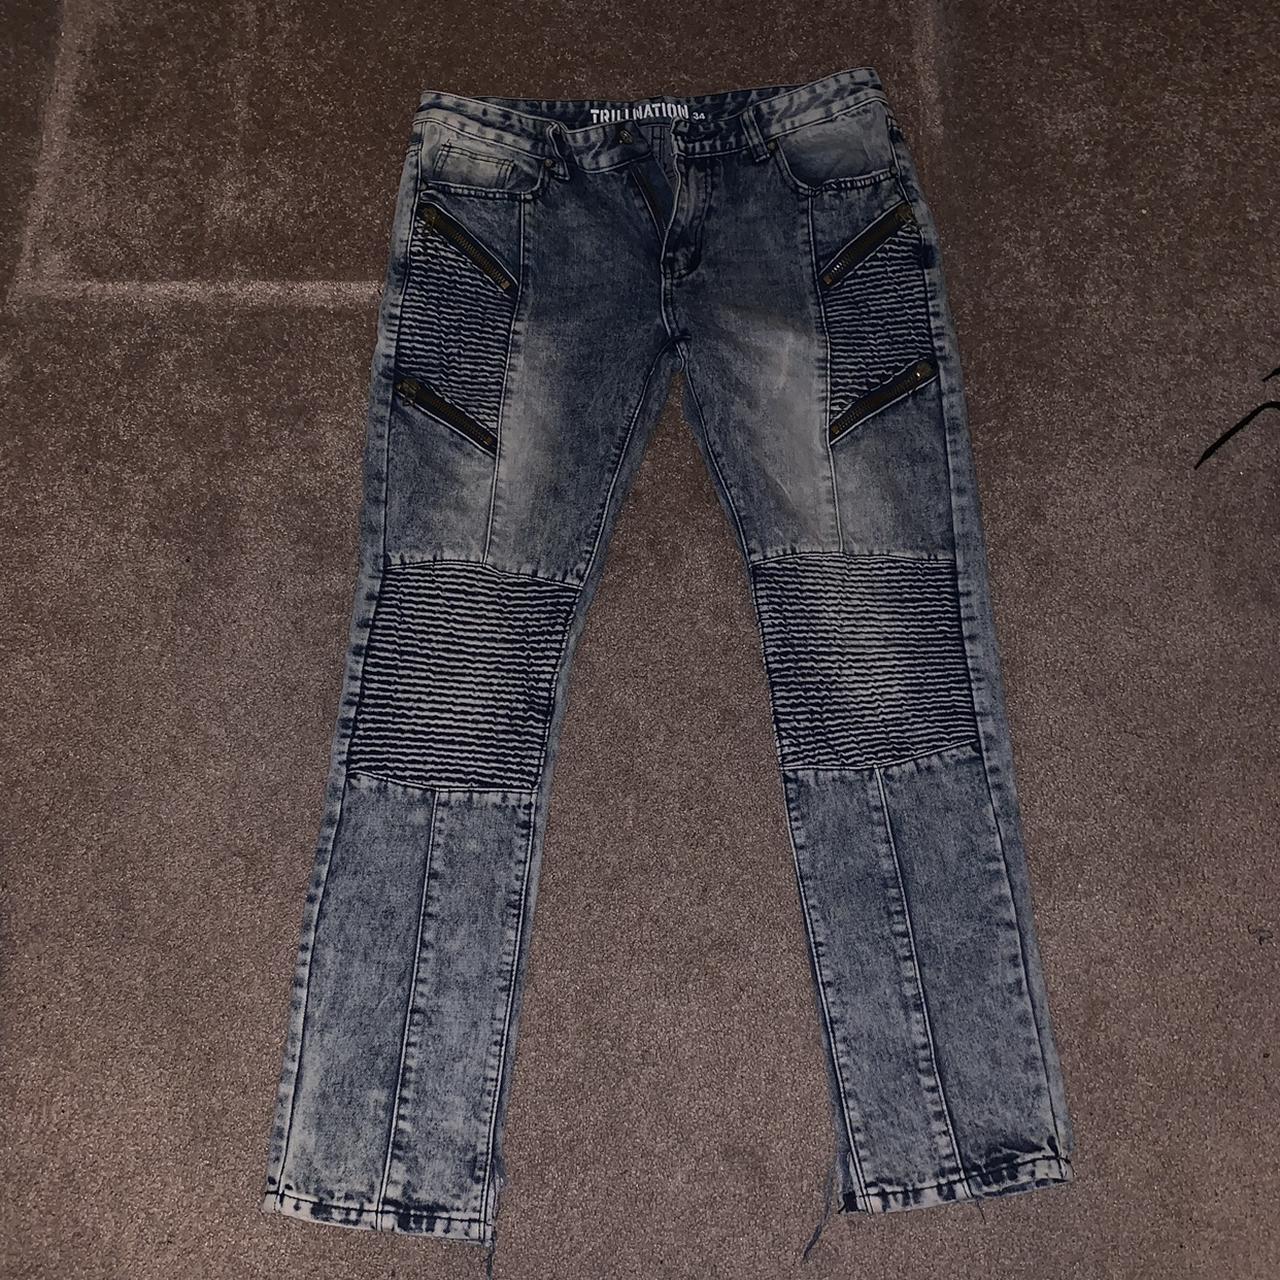 Trillnation Distressed Denim Jeans Mens Size 34.... - Depop